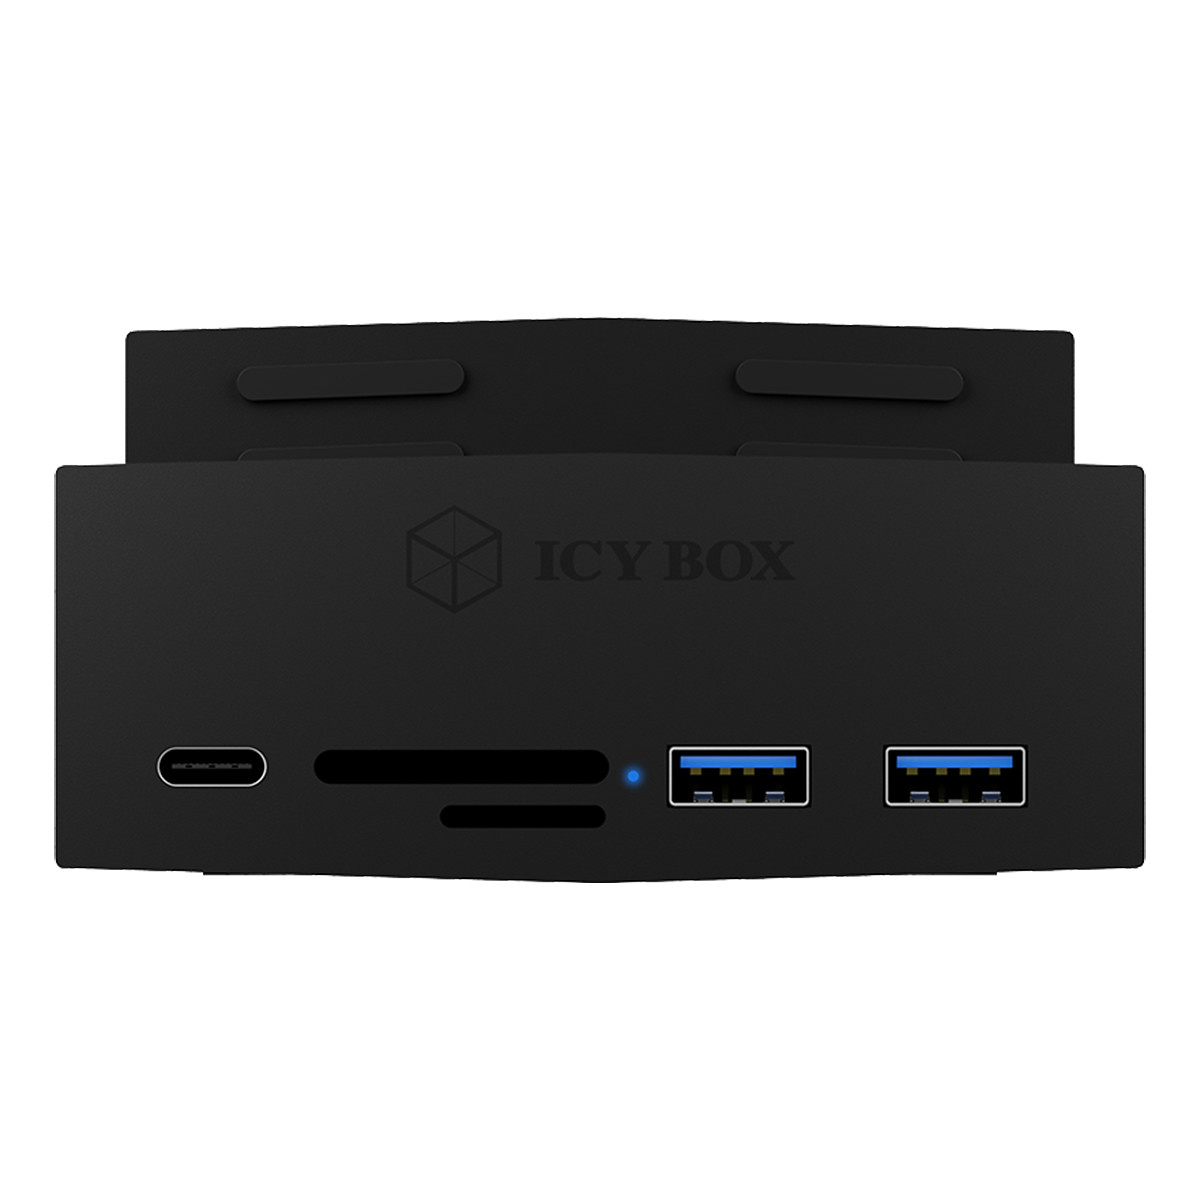 Icy Box 3-port USB 3.0 hubb och kortläsare, klämfäste, svart